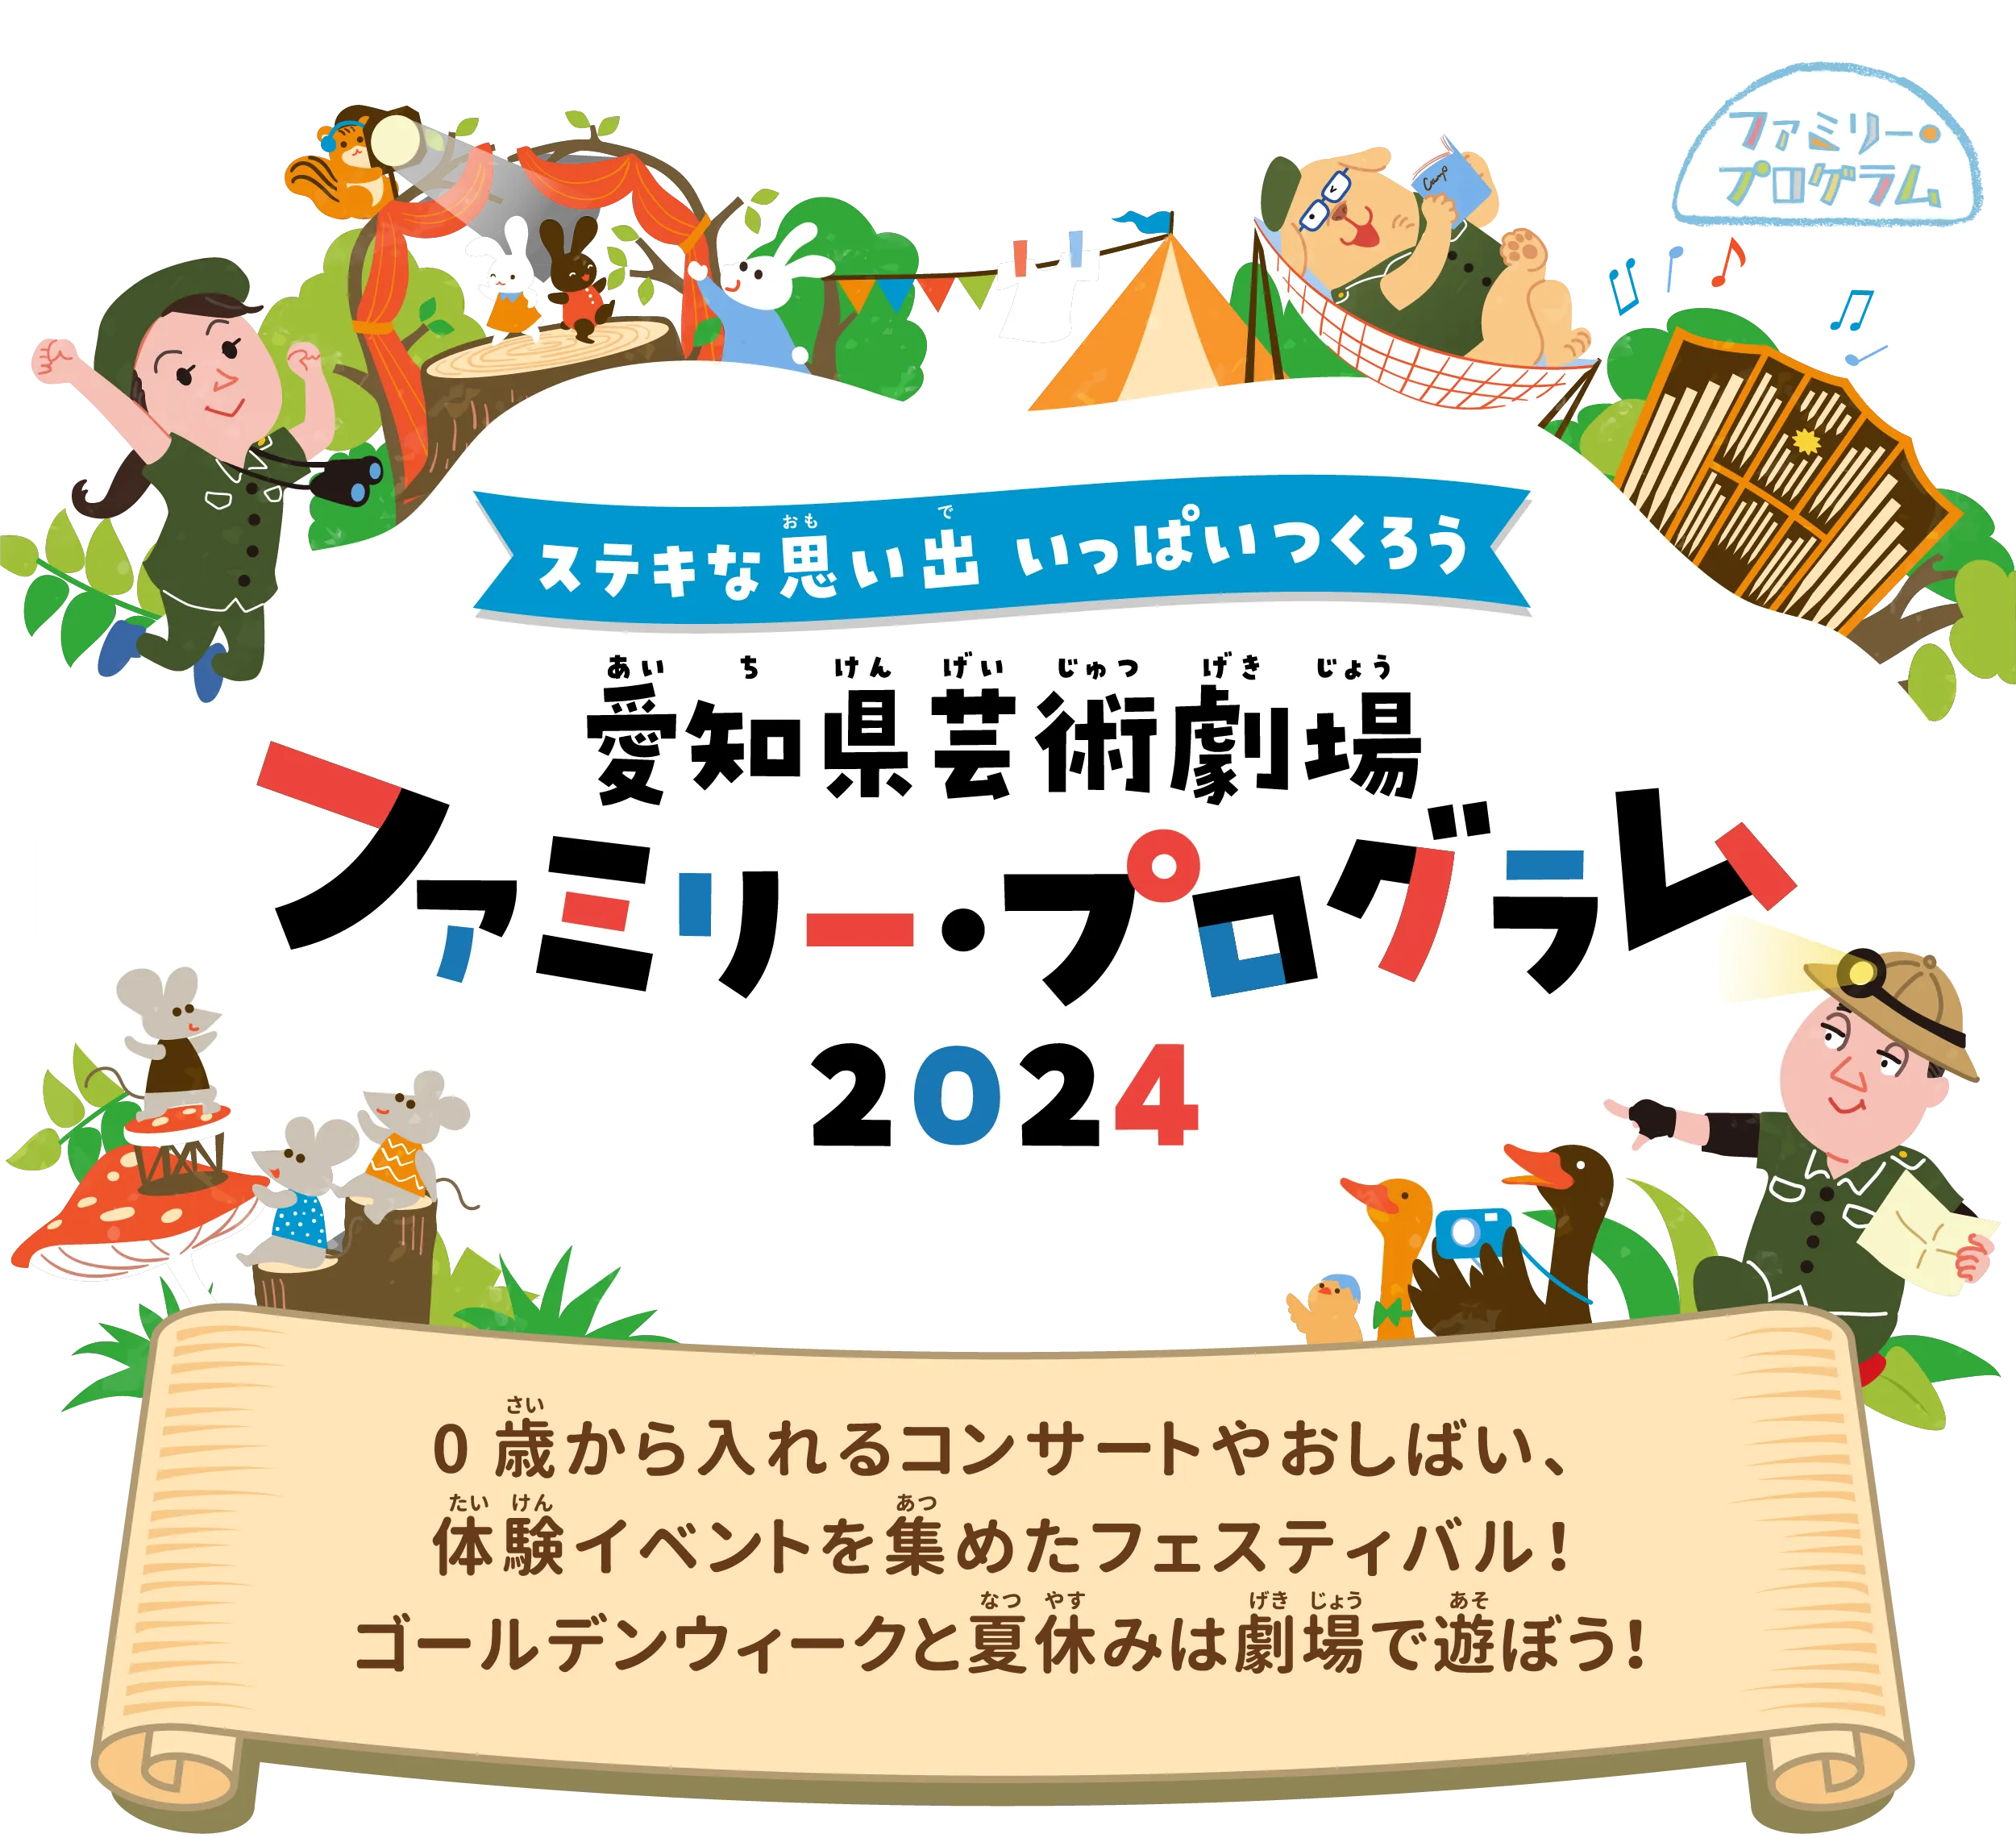 愛知県芸術劇場 ファミリー・プログラム 2024